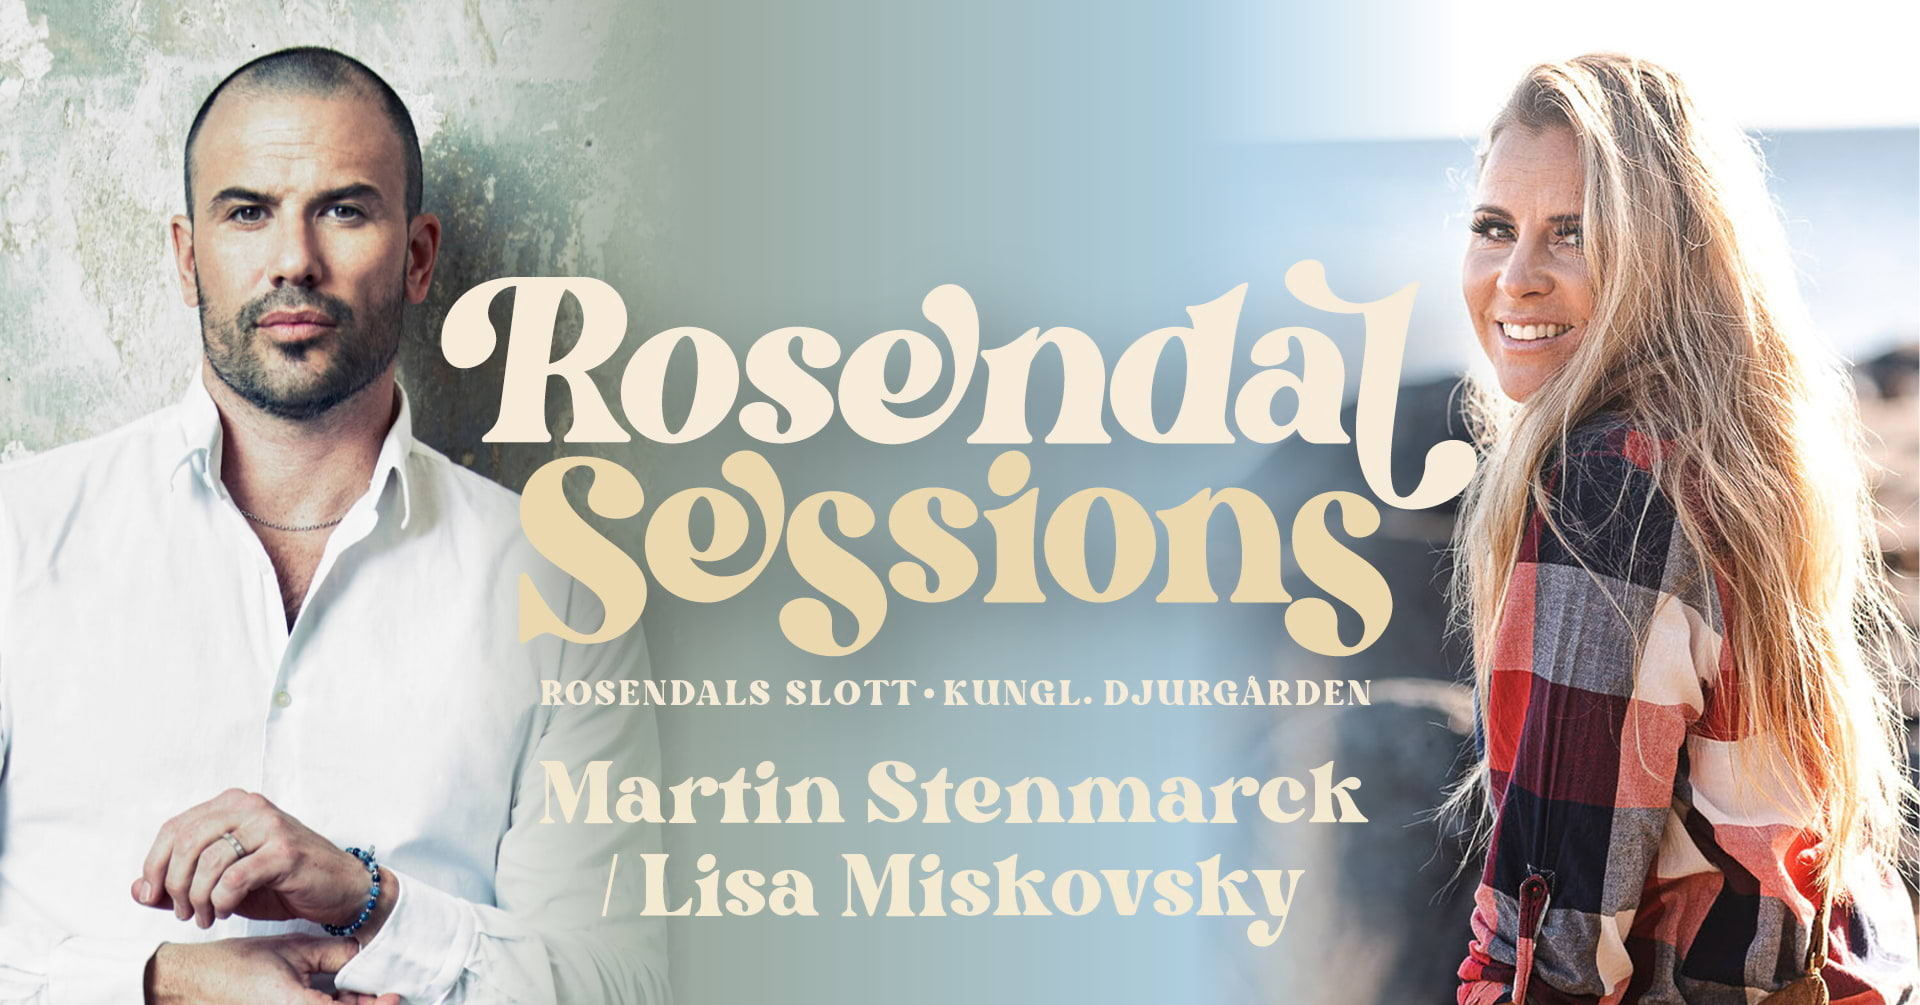 Lisa Miskovsky/Martin Stenmarck på Rosendal Sessions 2023 | Stockholm, Rosendals Slott